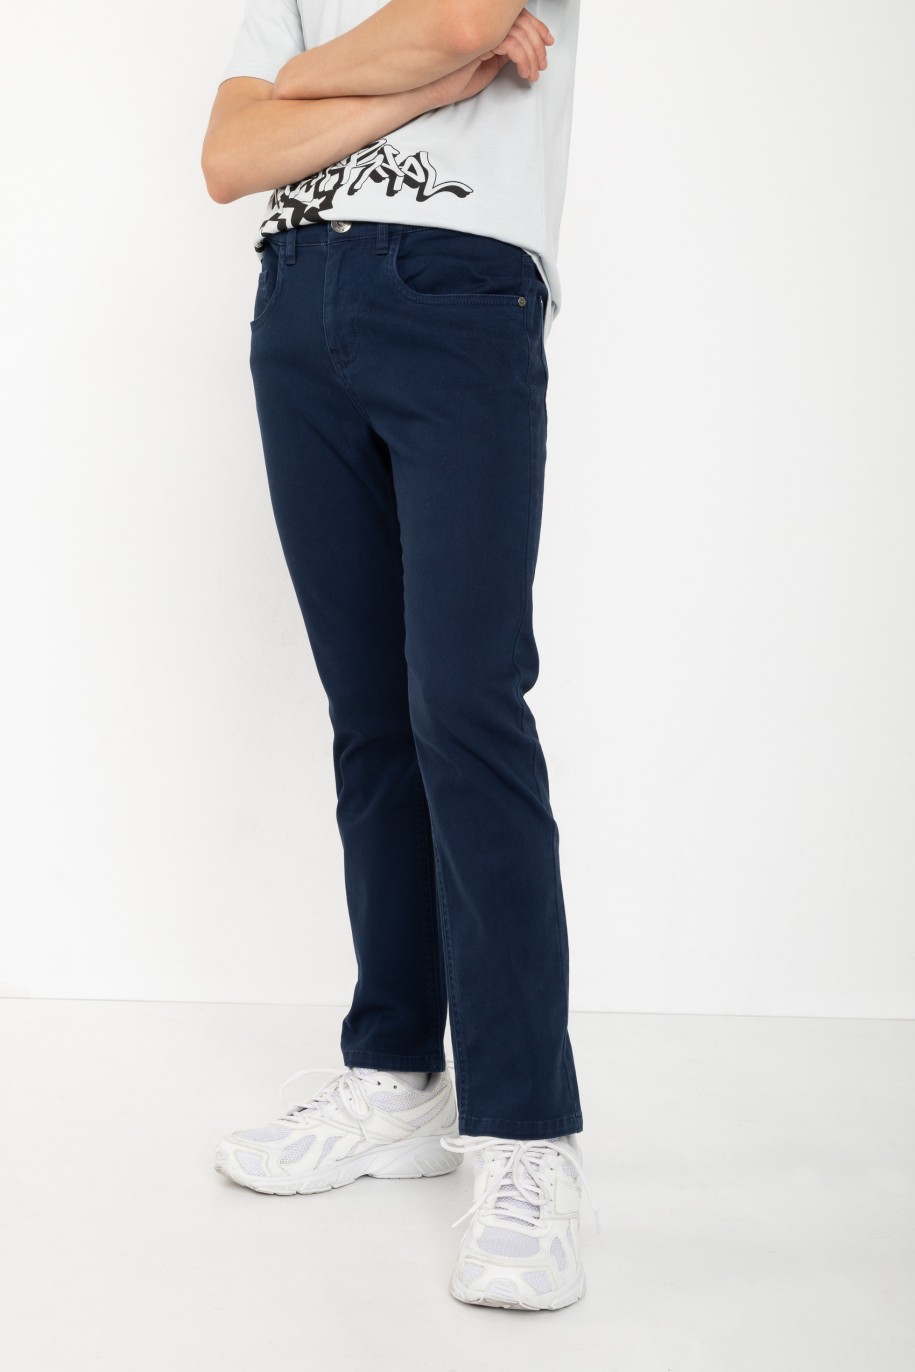 Granatowe spodnie jeansowe o klasycznym kroju - 46445